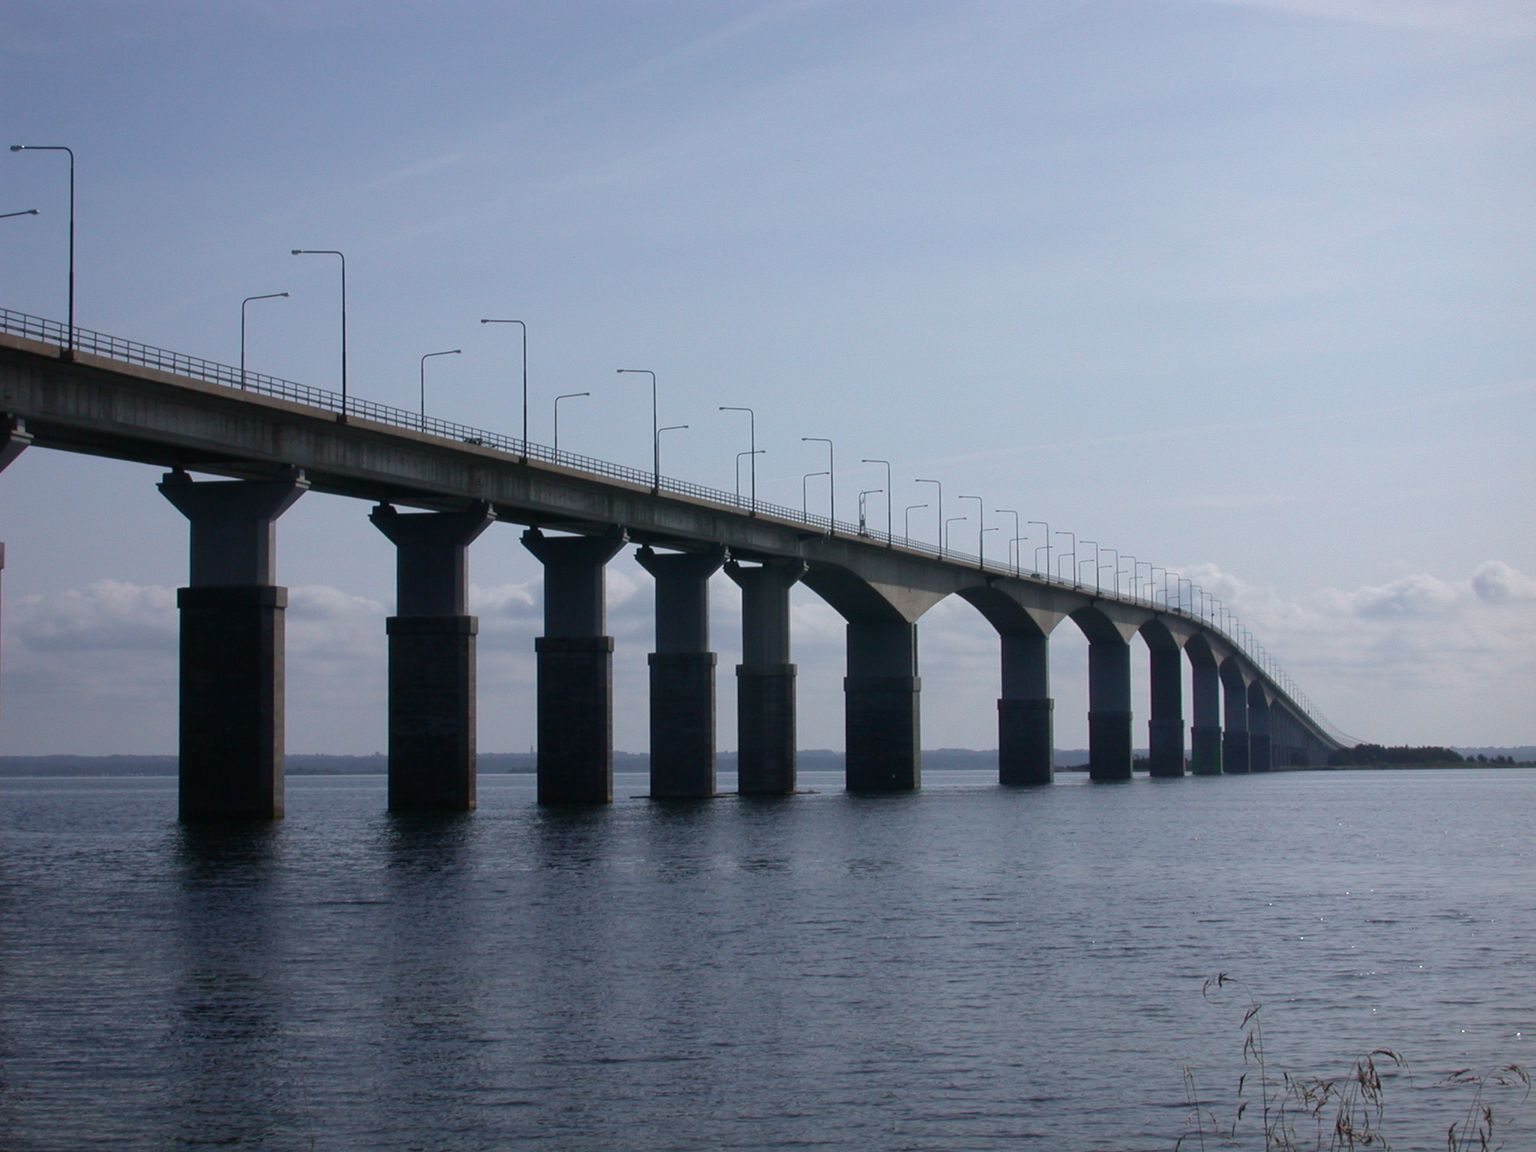 Ölandi sild ehk Ölandsbron.